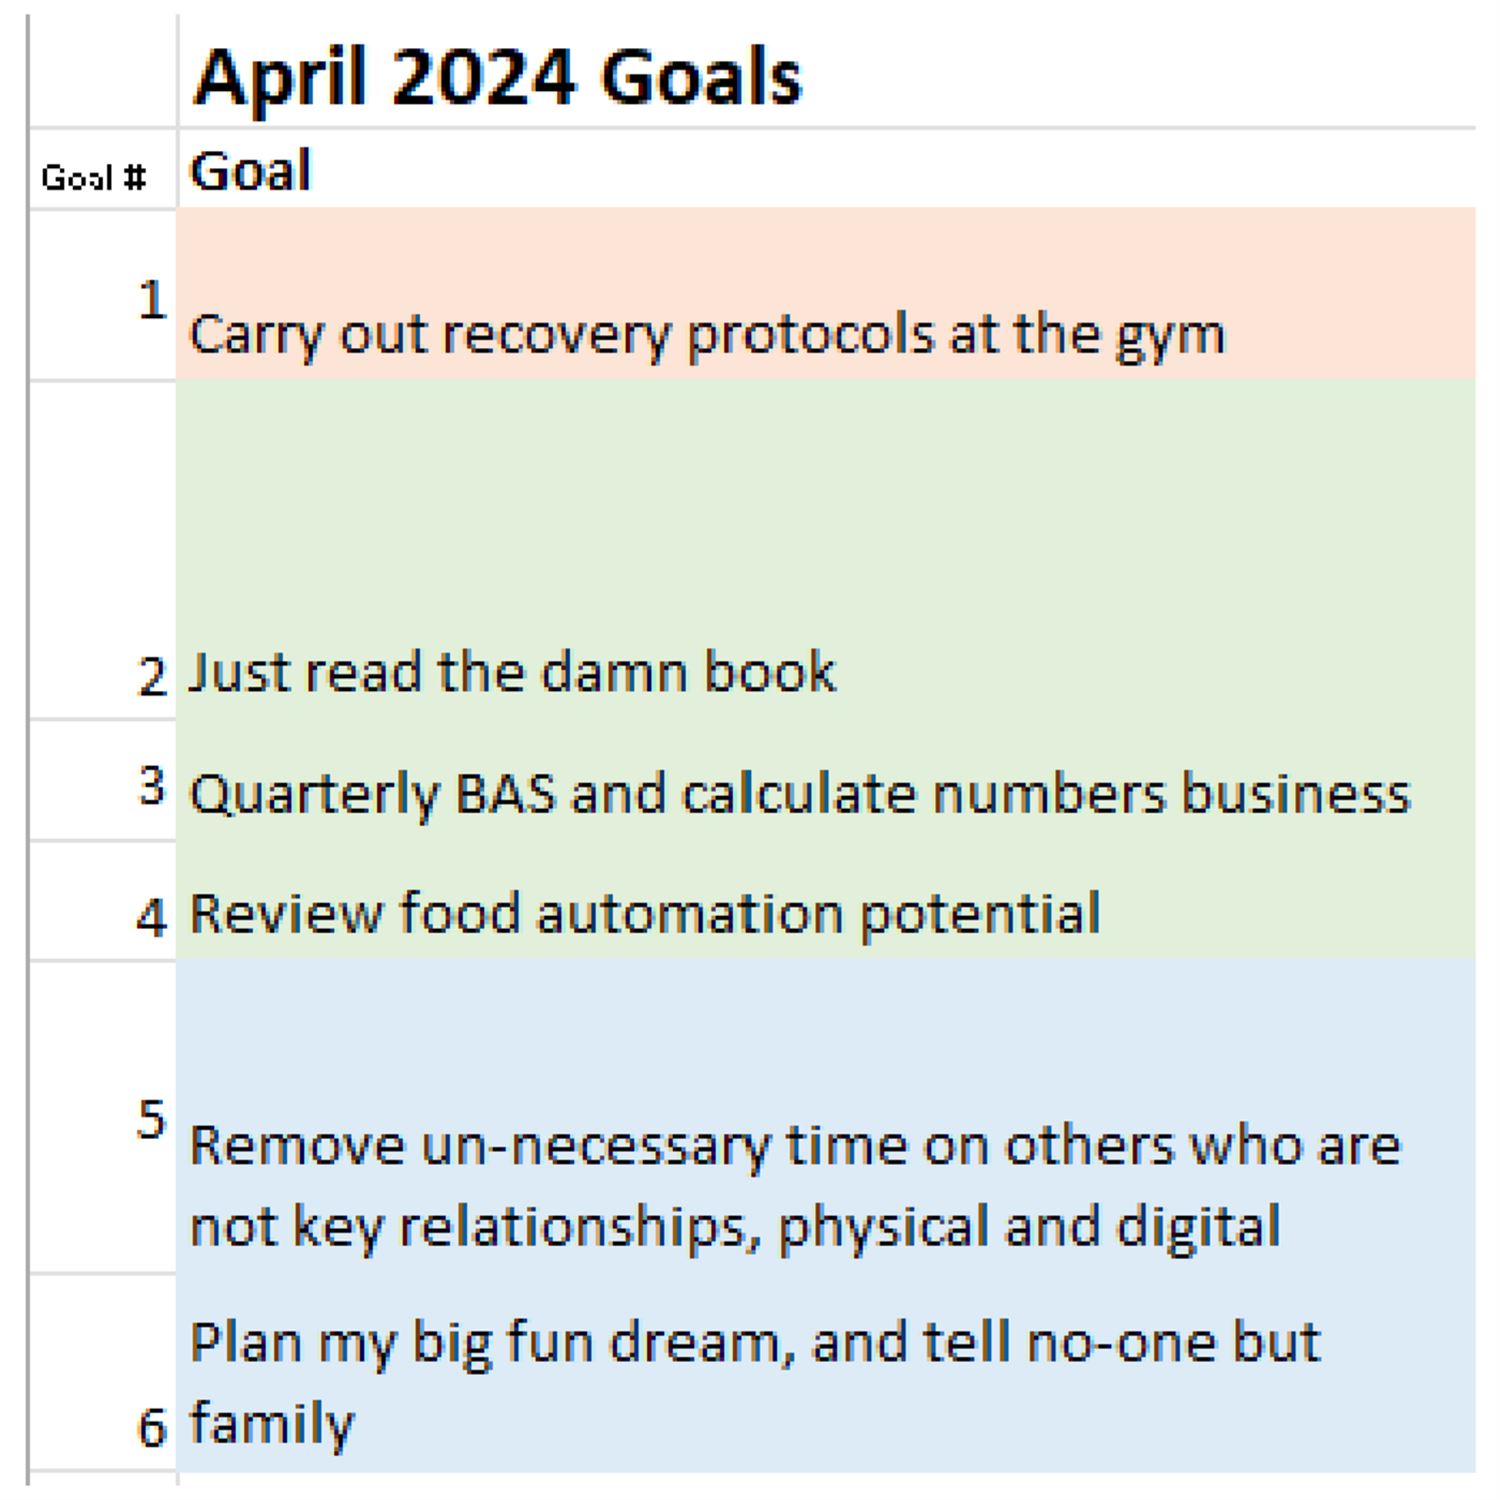 Juan's April 2024 Goals